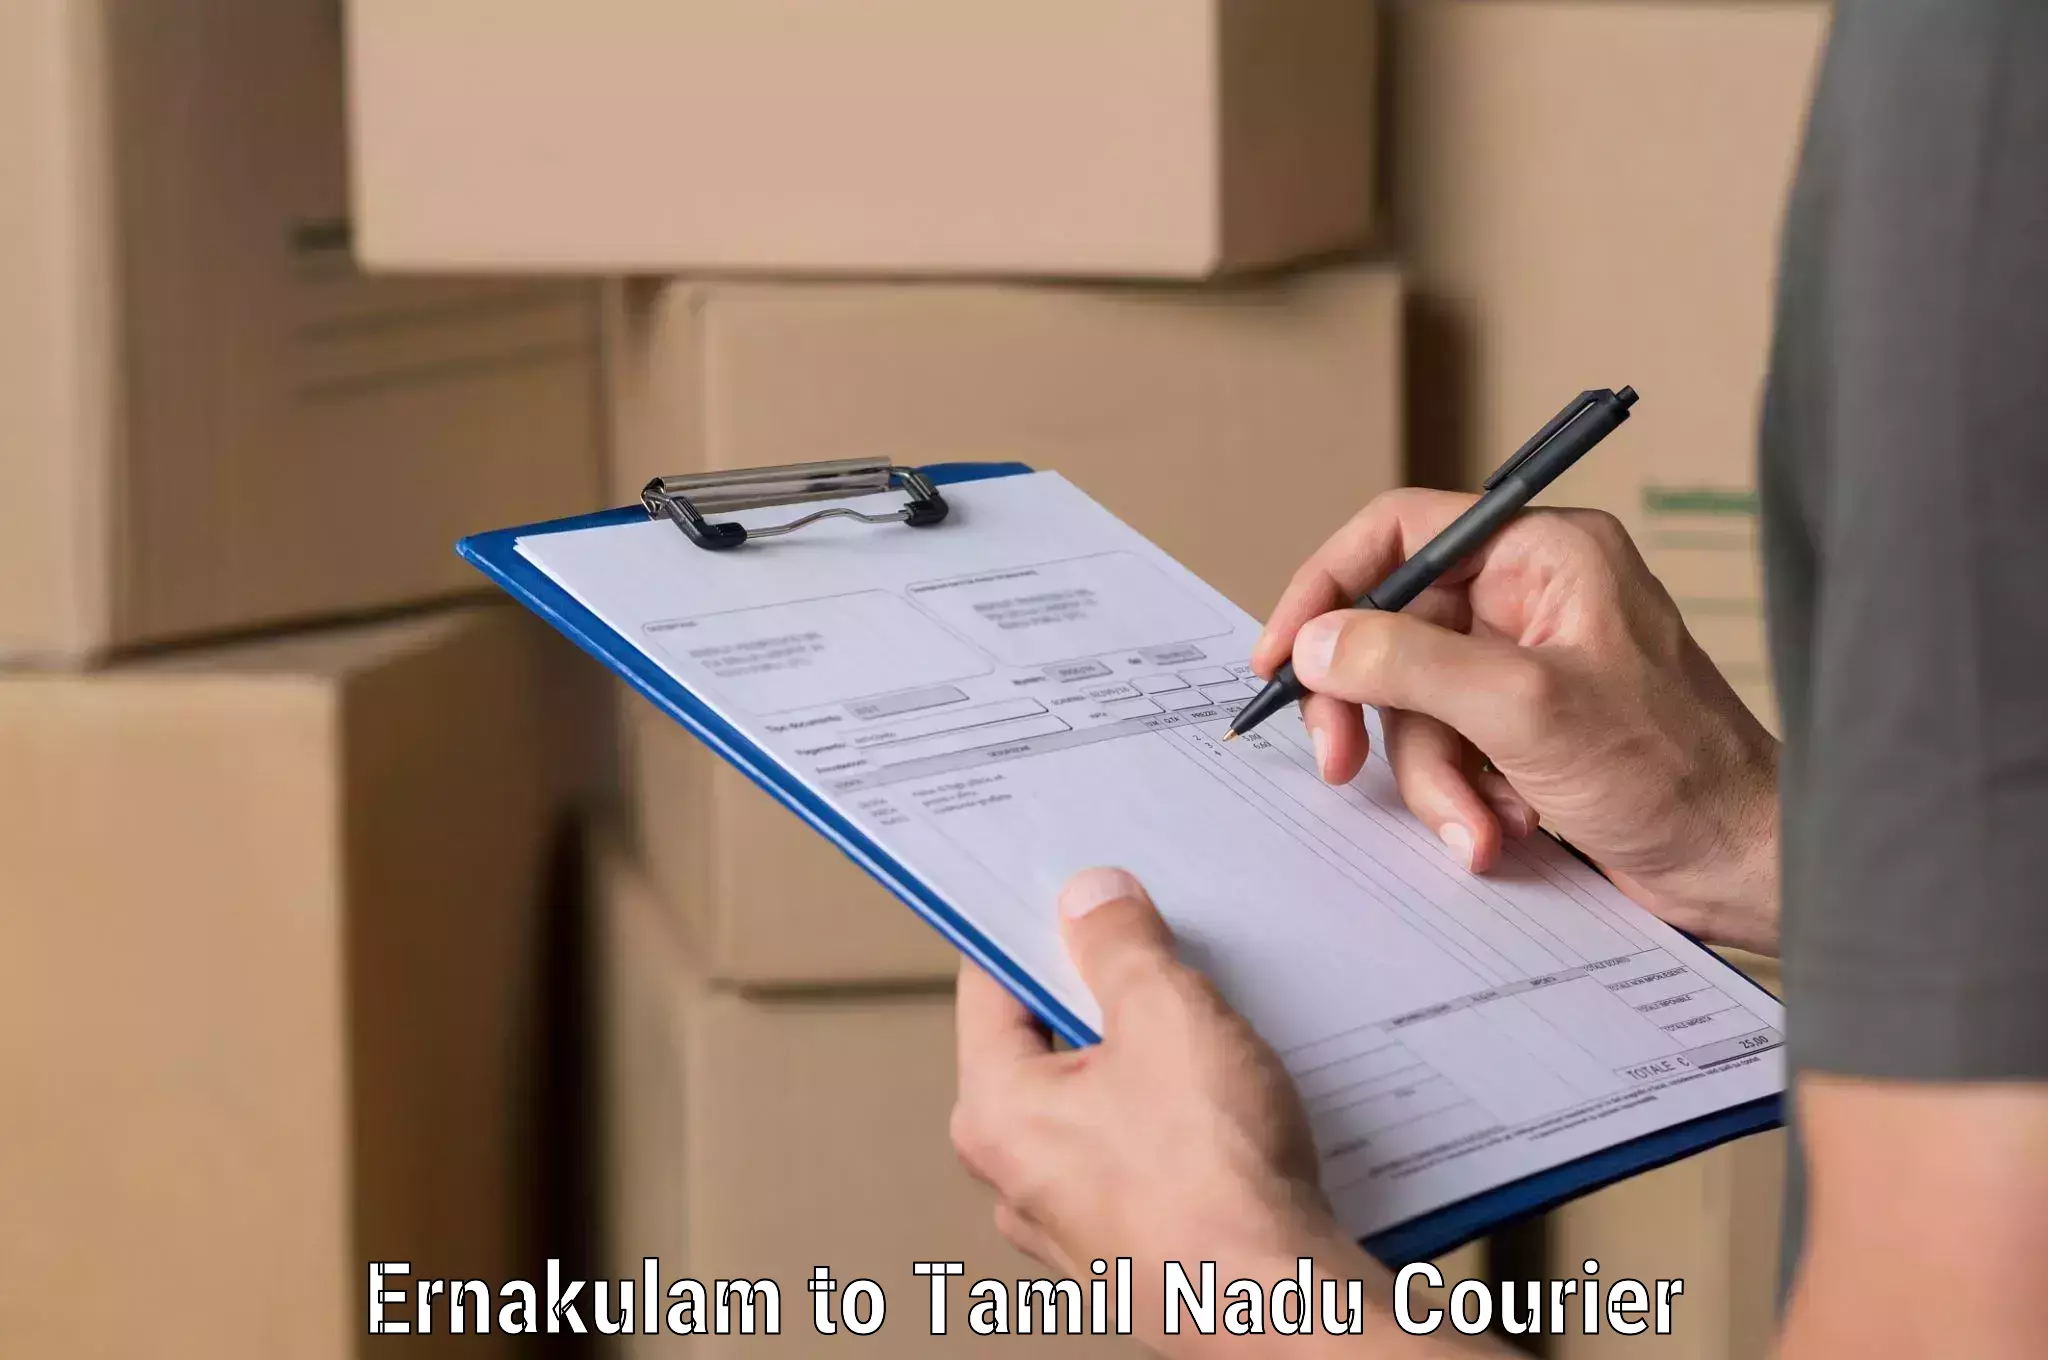 Full-service courier options Ernakulam to Amrita Vishwa Vidyapeetham Coimbatore